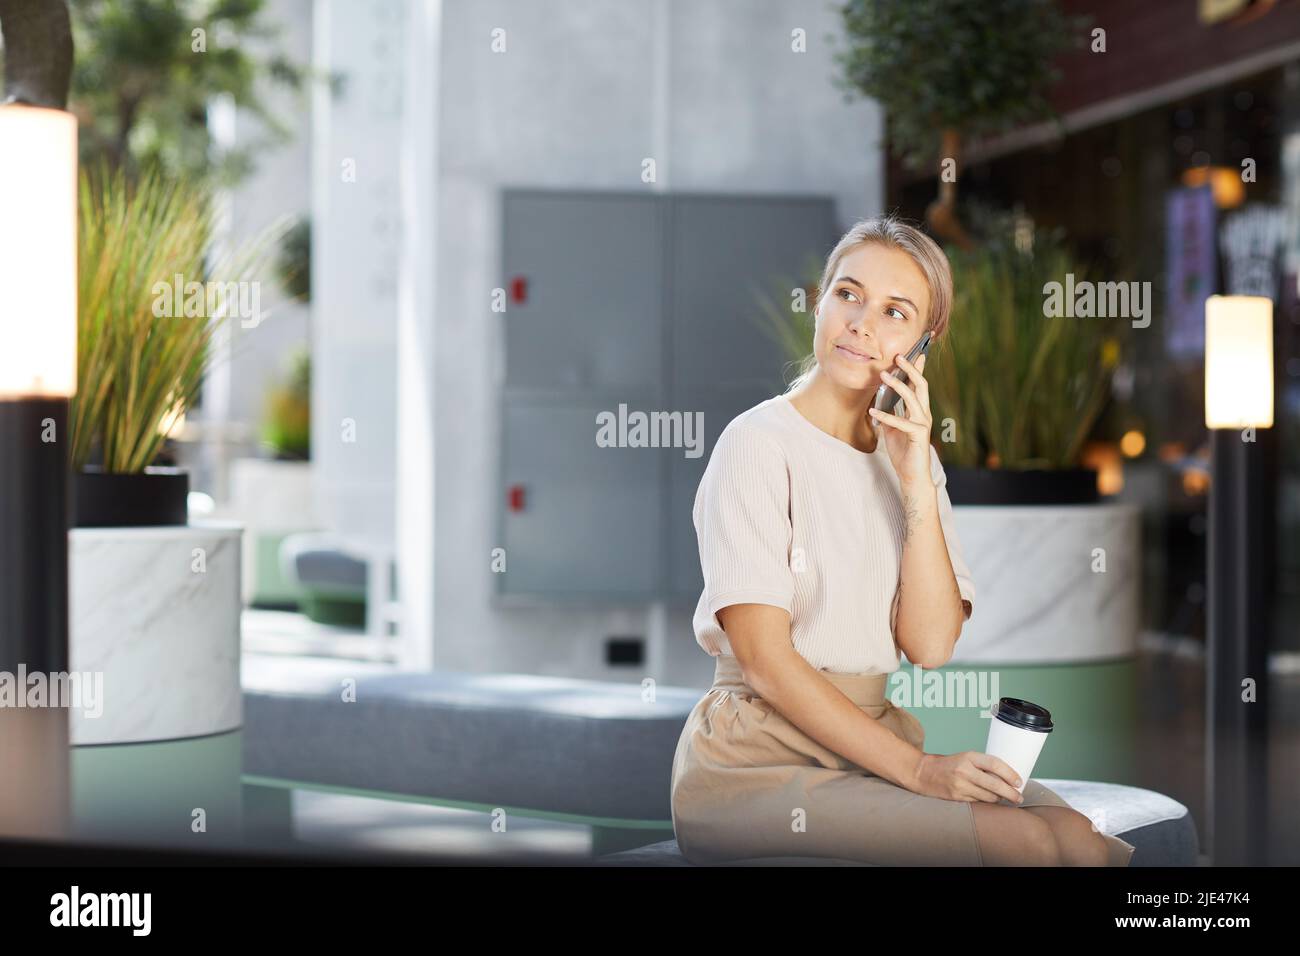 Inhalt hübsche Geschäftsfrau in stilvollem Outfit, sitzt auf einer bequemen Bank in der Lobby und hält einen Takeout-Becher, während sie per Telefon anruft Stockfoto